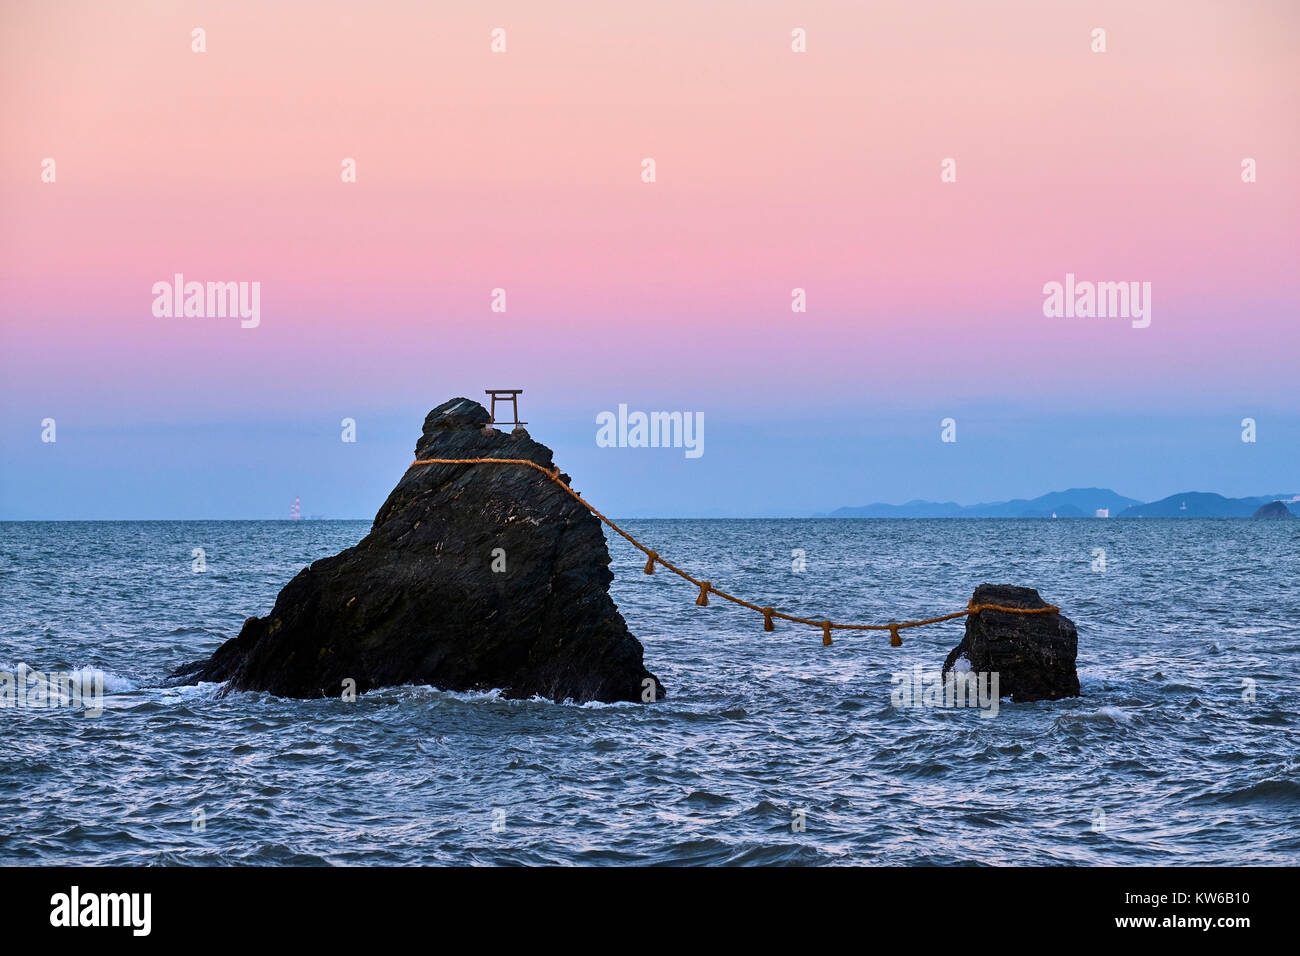 Le Japon, l'île de Honshu, Ise Shima, région de Mie, Futami, Meoto-Iwa (Wedded Rocks), deux roches considérées comme hommes et femmes, s'est joint en mariage de cale Banque D'Images